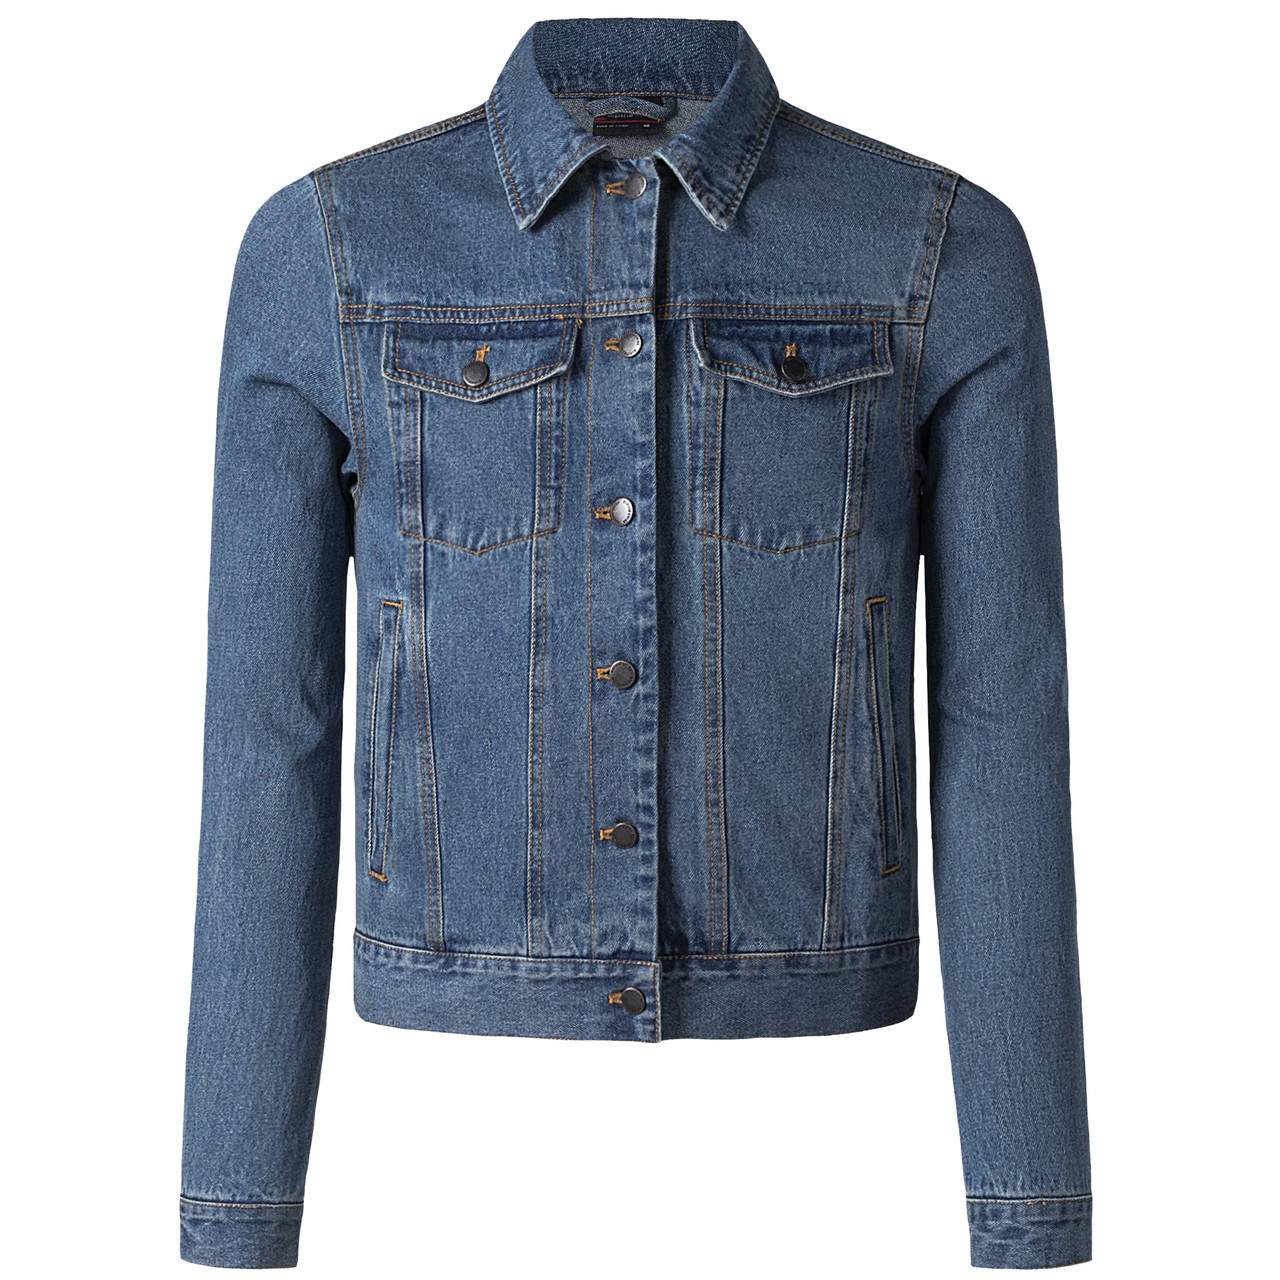 Men's Jacket Casual Denim Blazer Fashion Coat Trucker Jean Outwear Travel